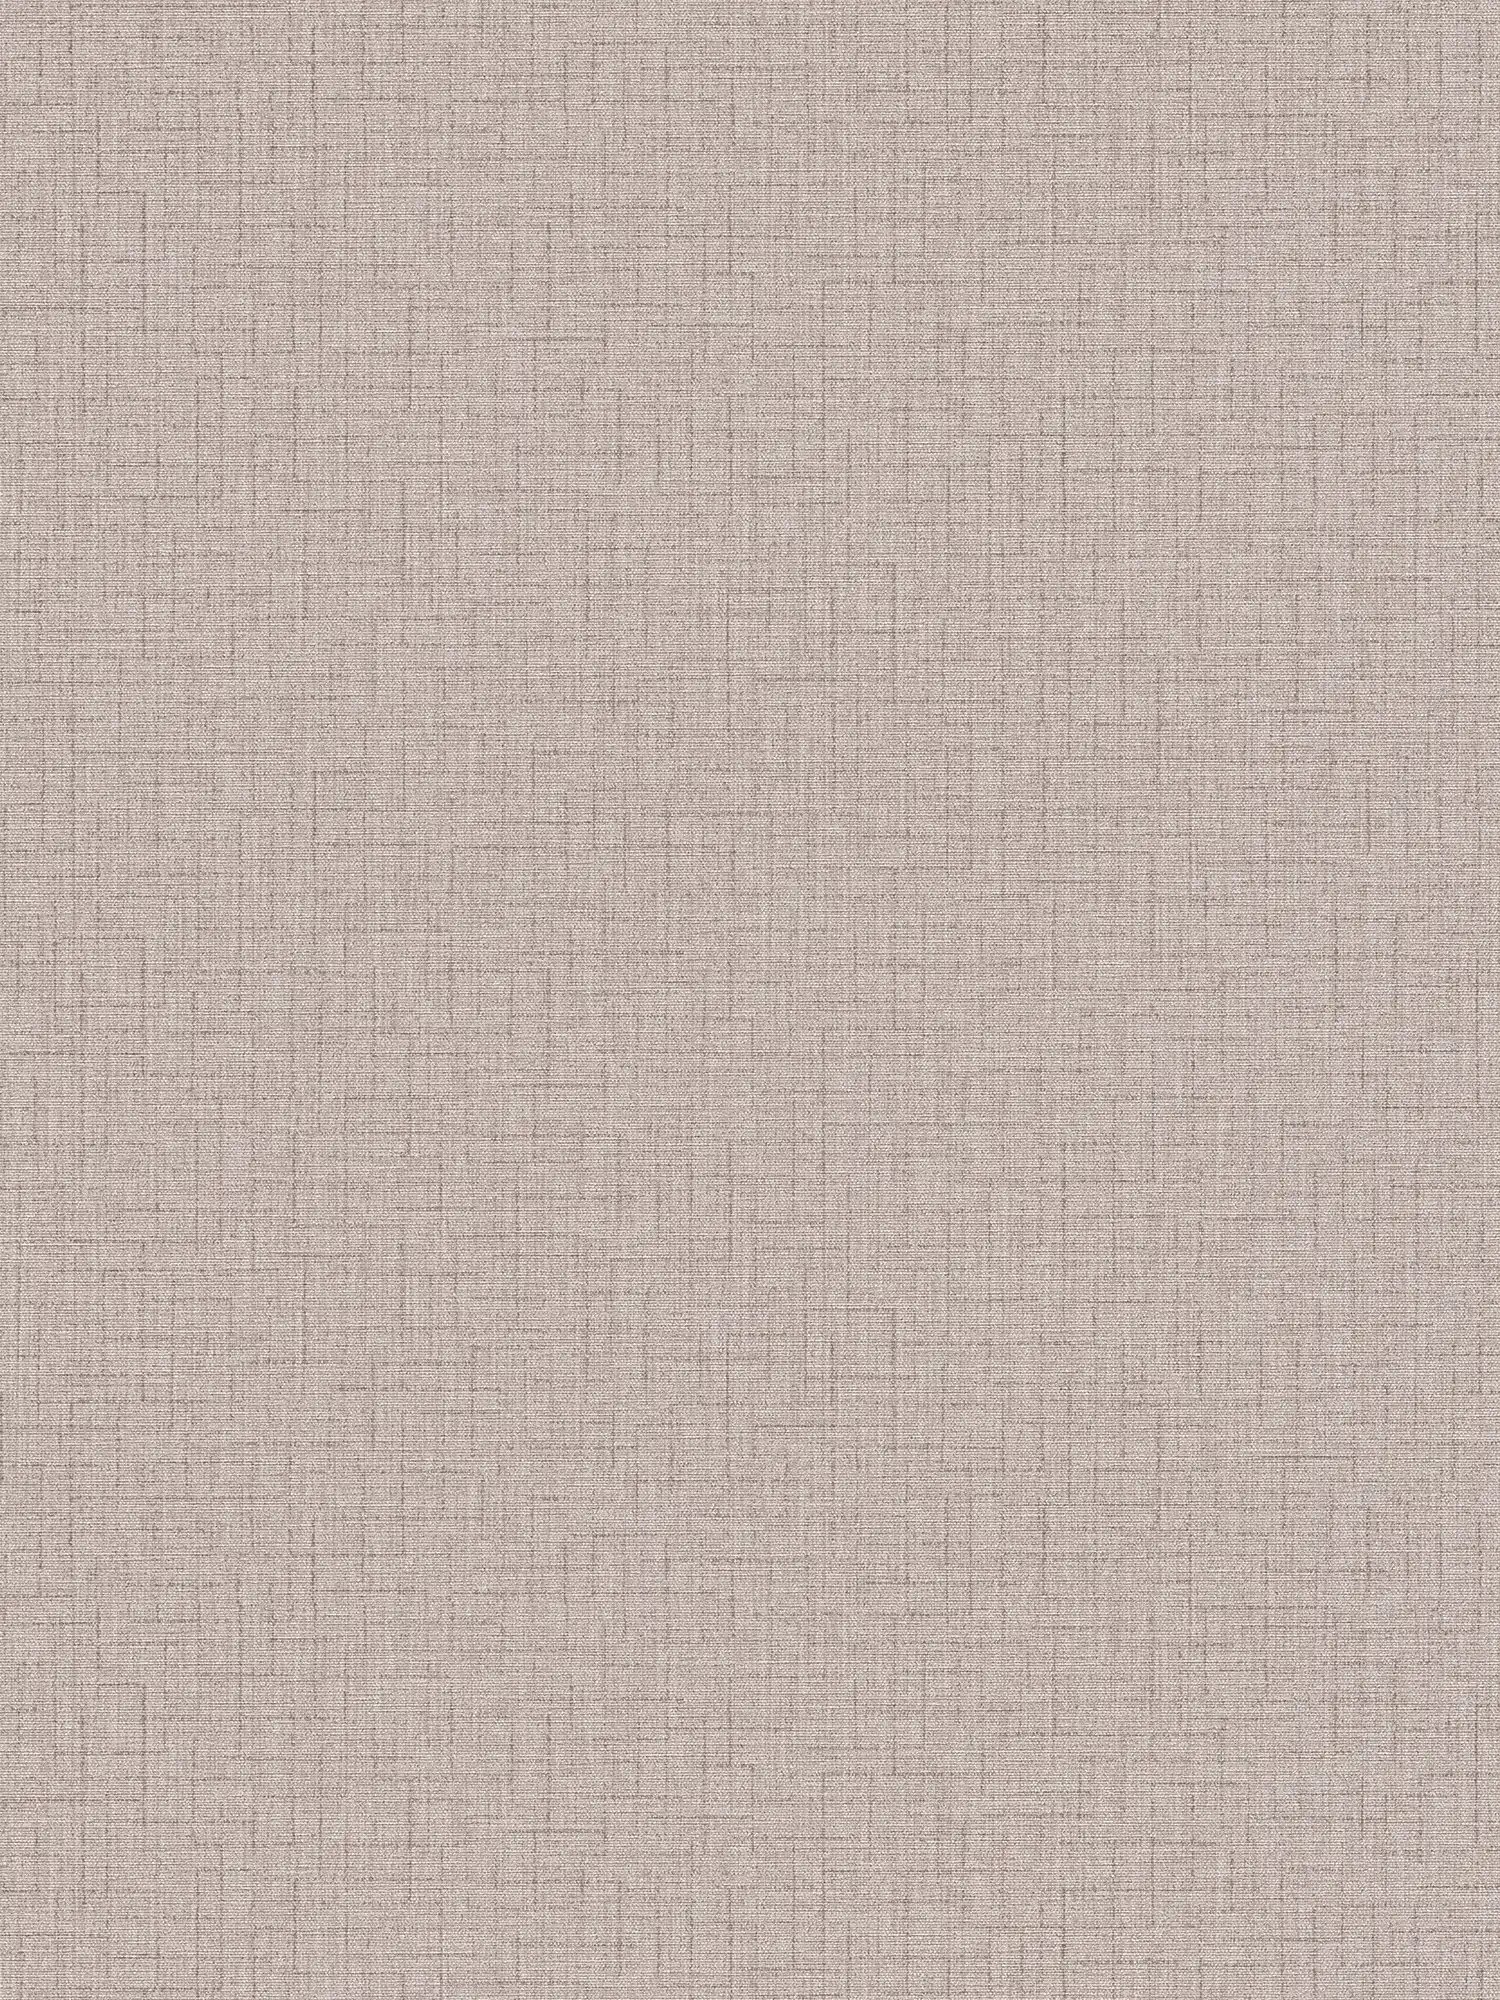 Plain wallpaper with textile design & texture pattern - beige
